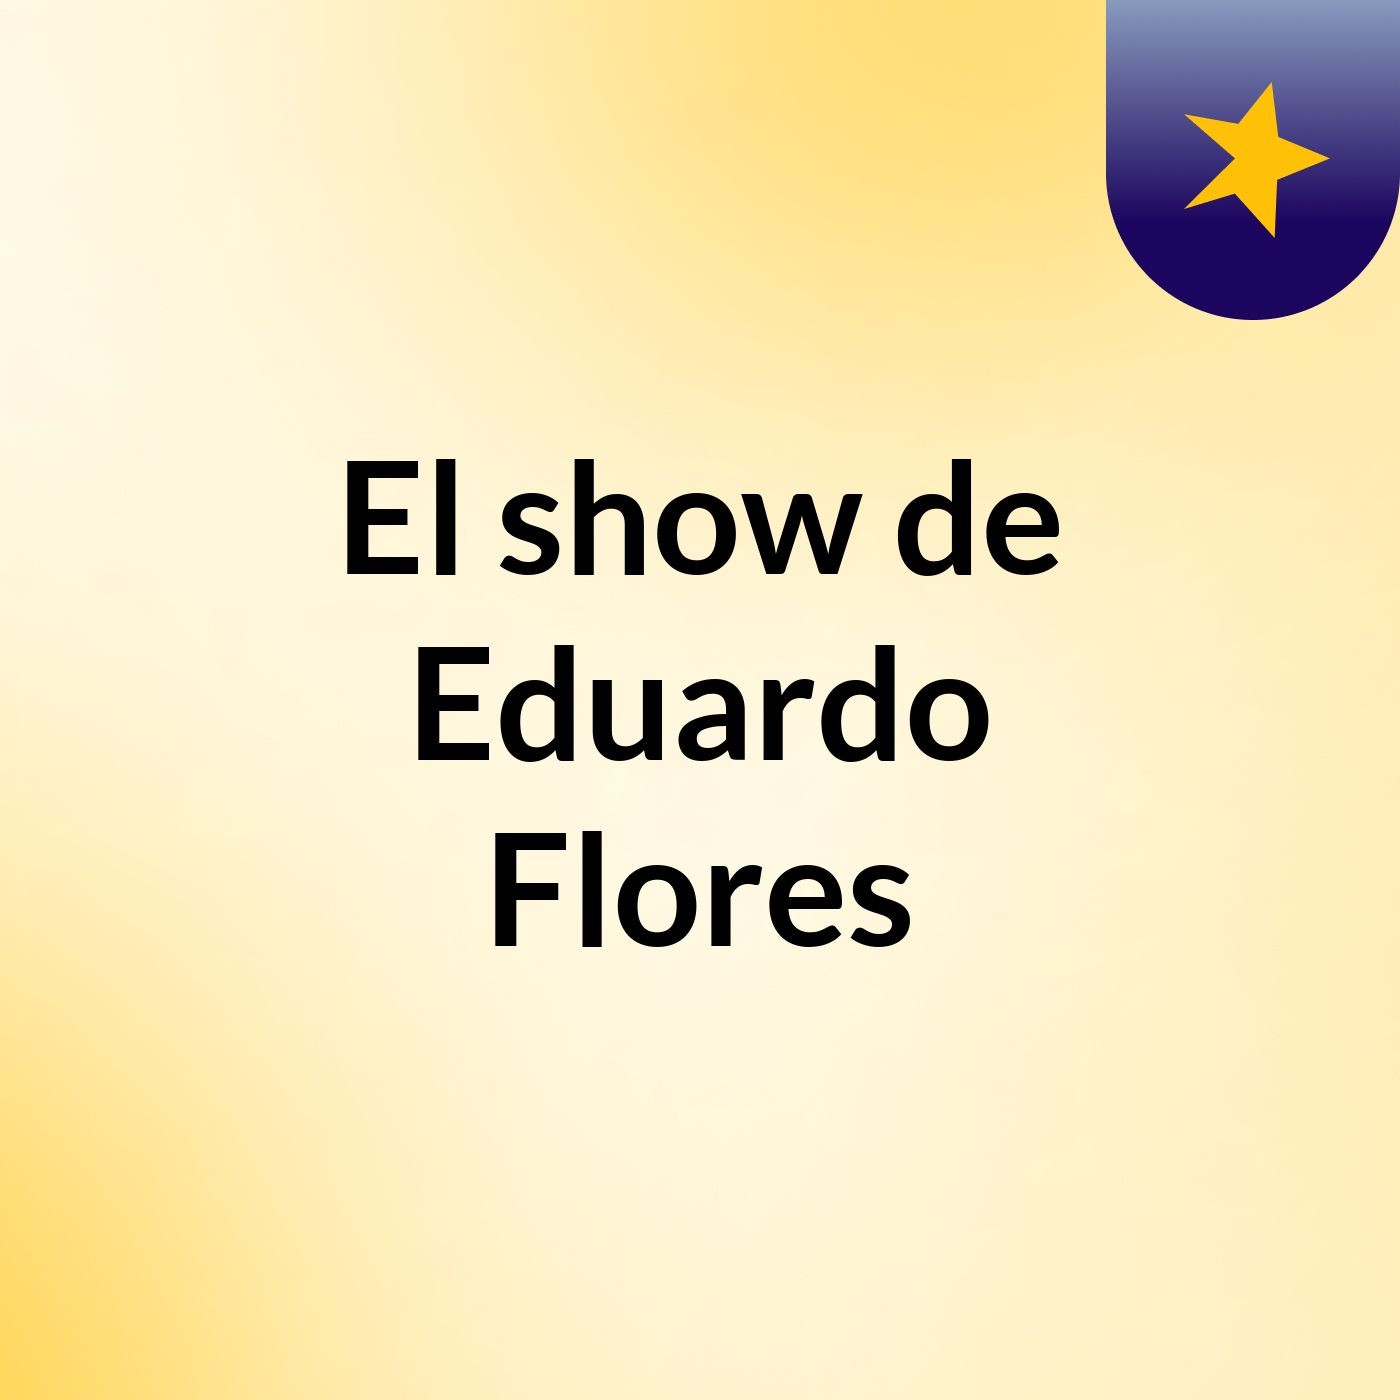 El show de Eduardo Flores